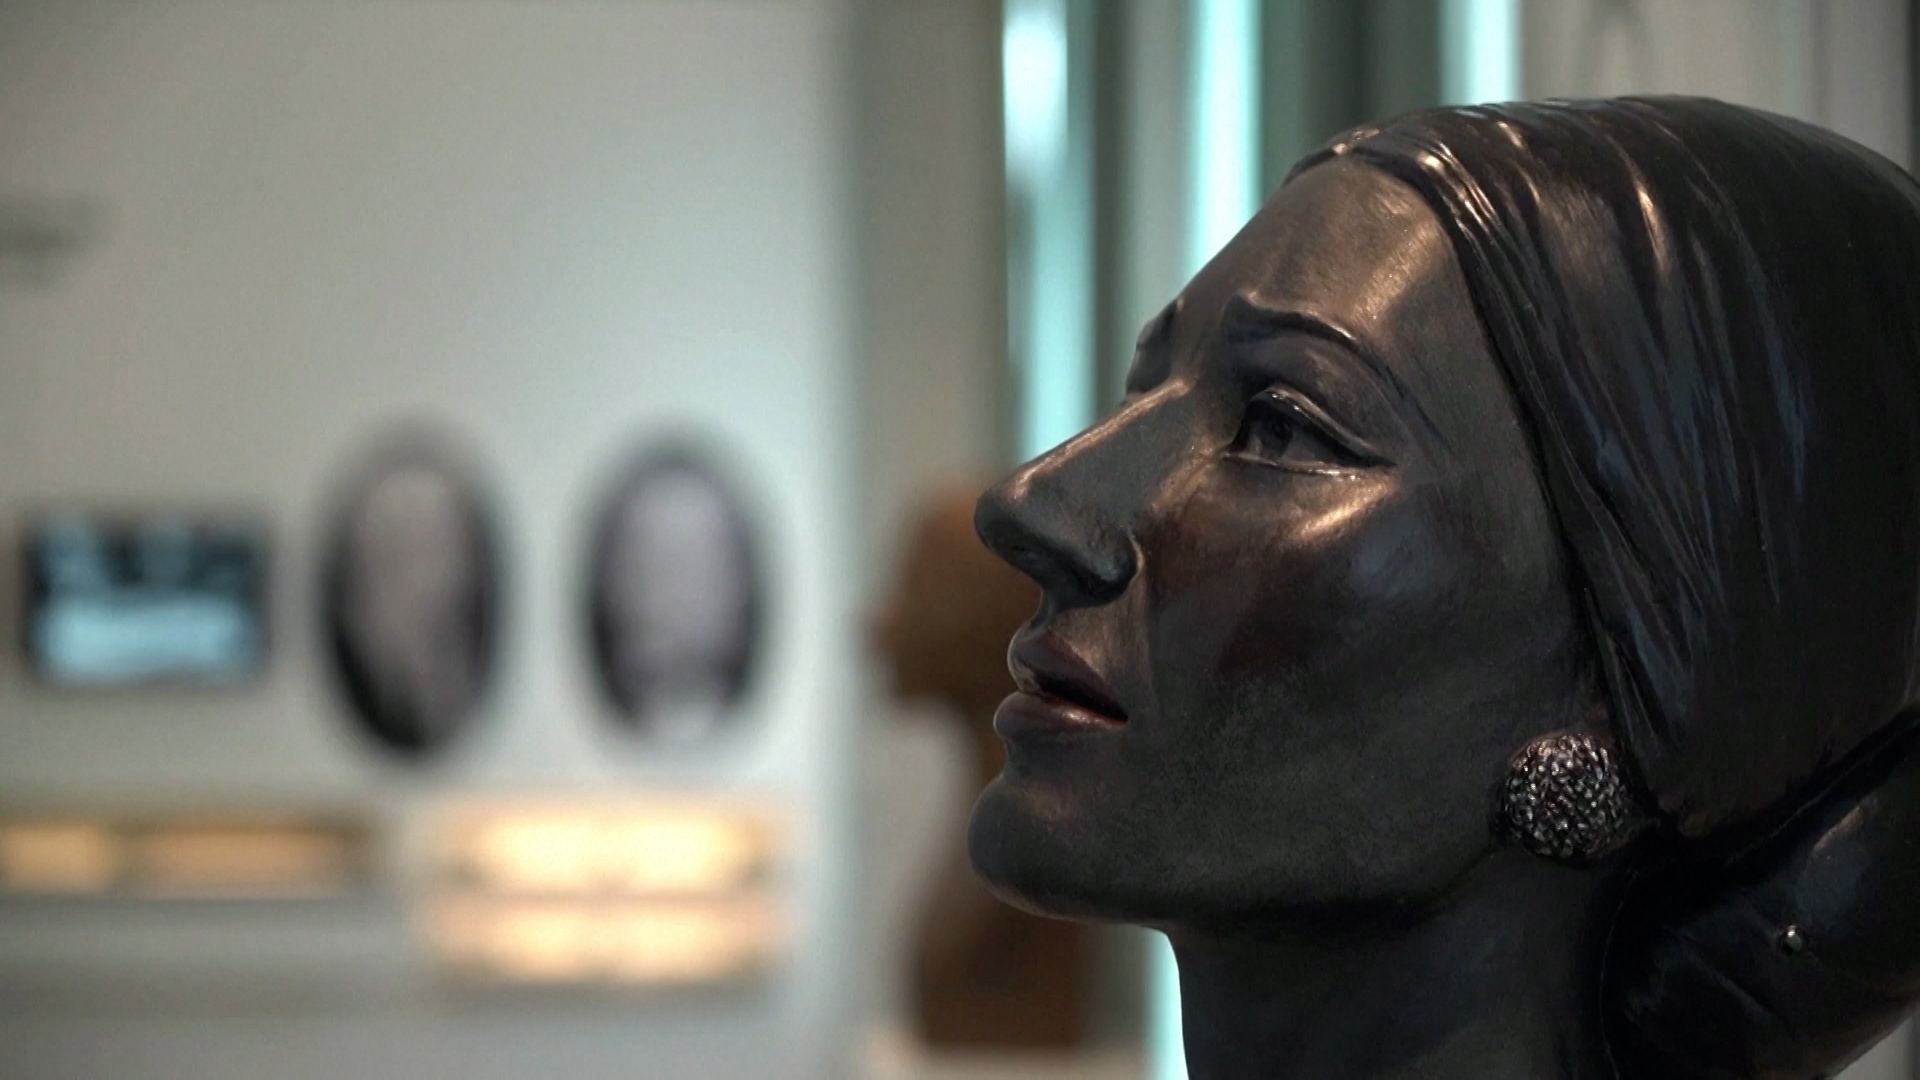 Μουσείο Μαρίας Κάλλας – Μια ματιά στην ζωή της θρυλικής ντίβας (video)